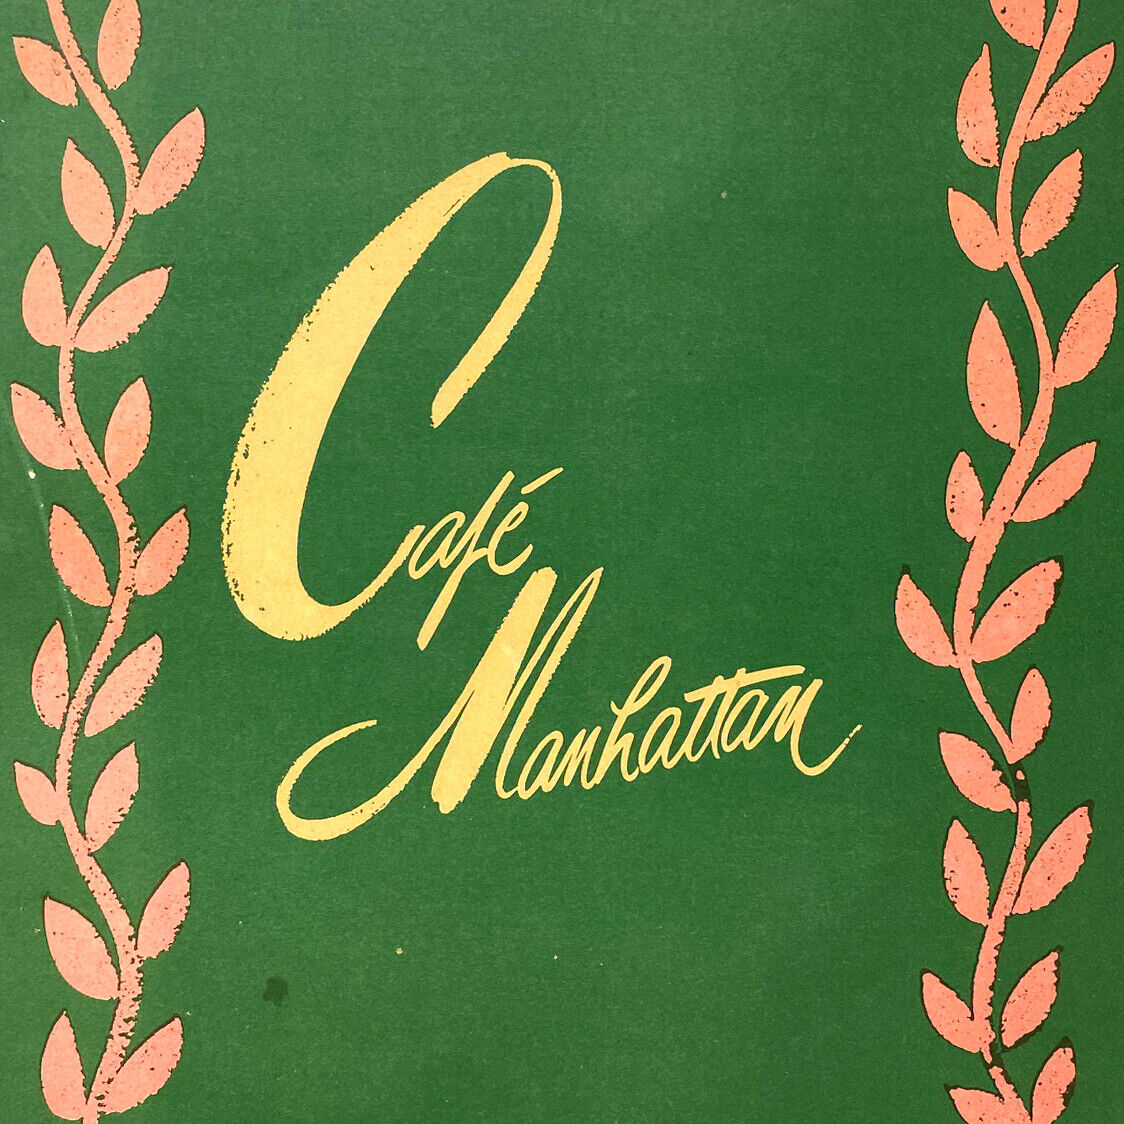 1954 The Cafe Café Manhattan Hotel Statler Restaurant Menu New York City